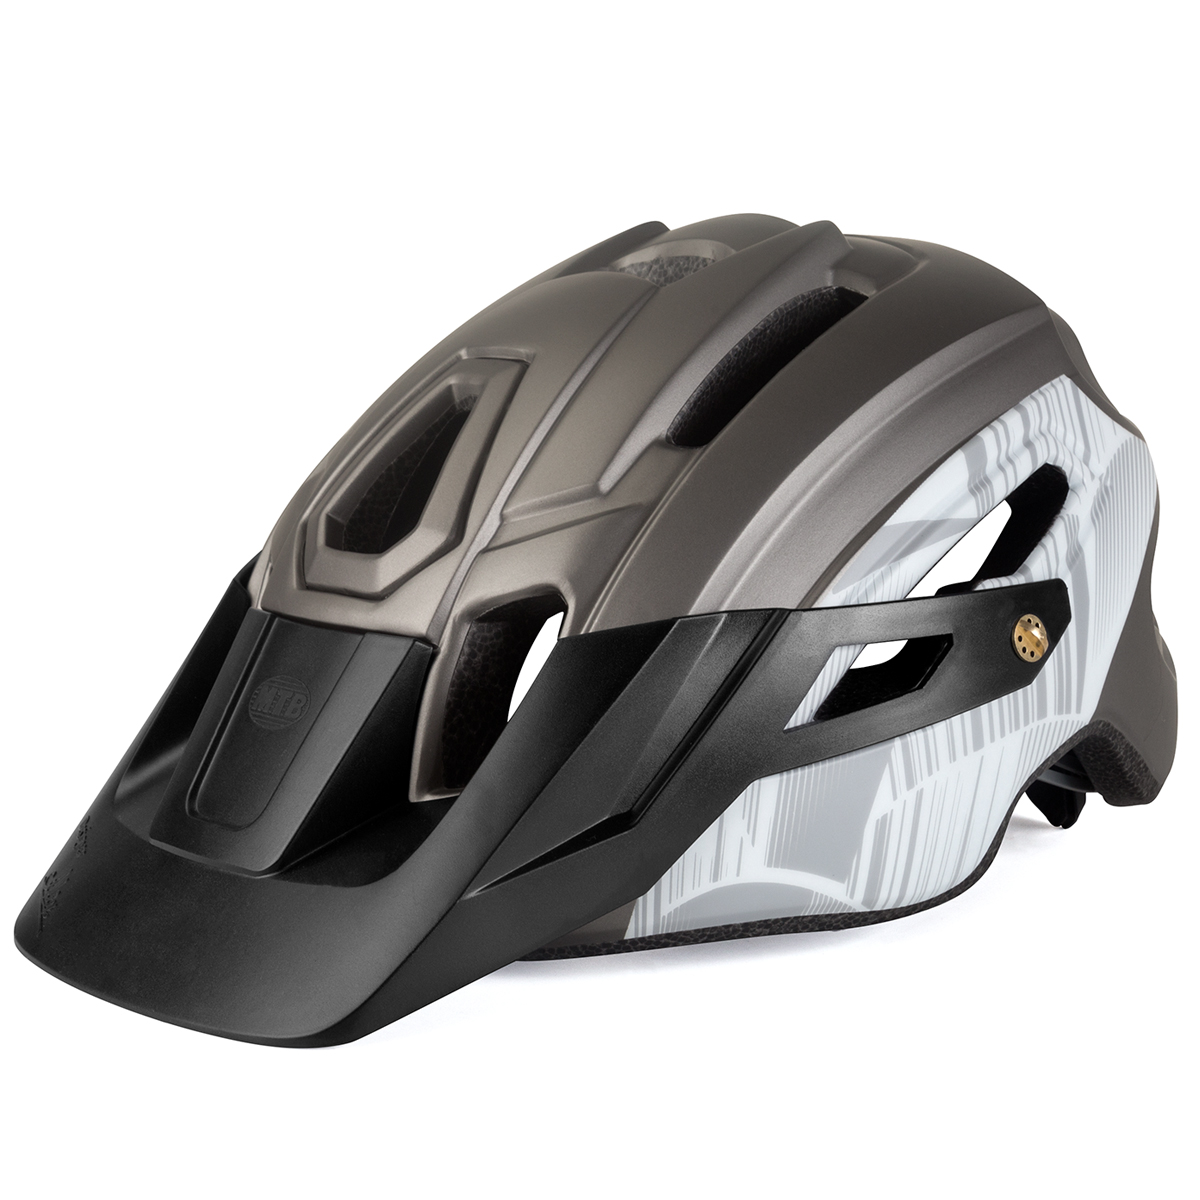 BATFOX自行车头盔MTB山地车一体成型骑行头盔带警示灯安全头盔